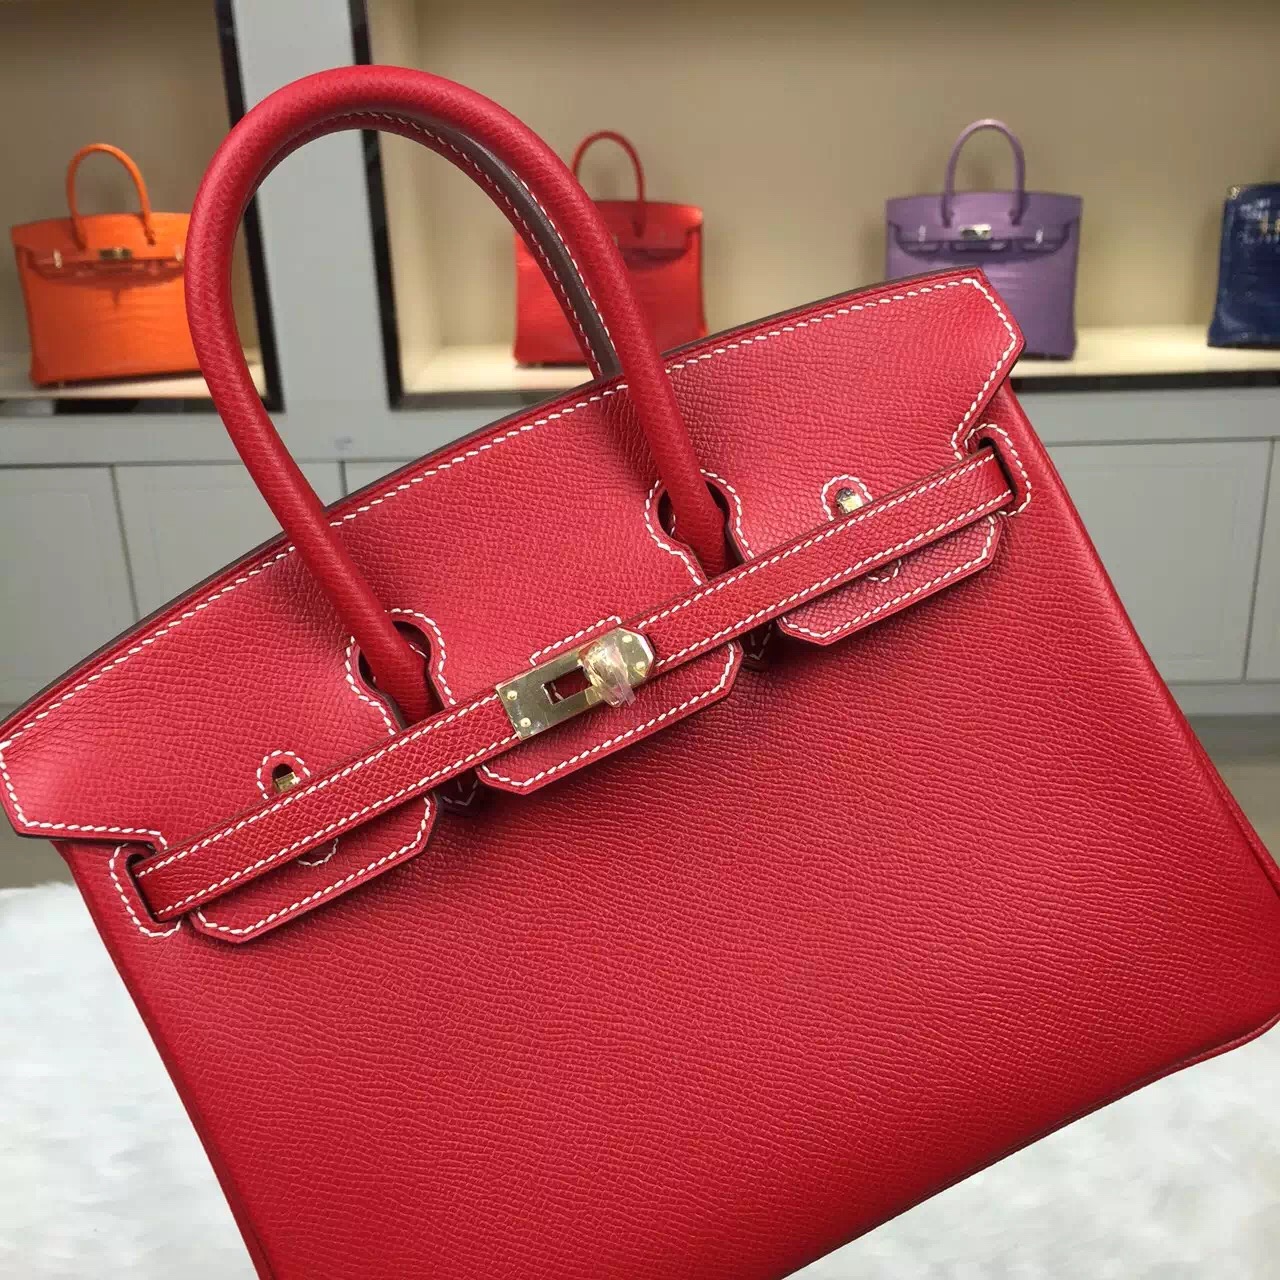 hermes birkin handbag 35cm red, used birkin bags hermes